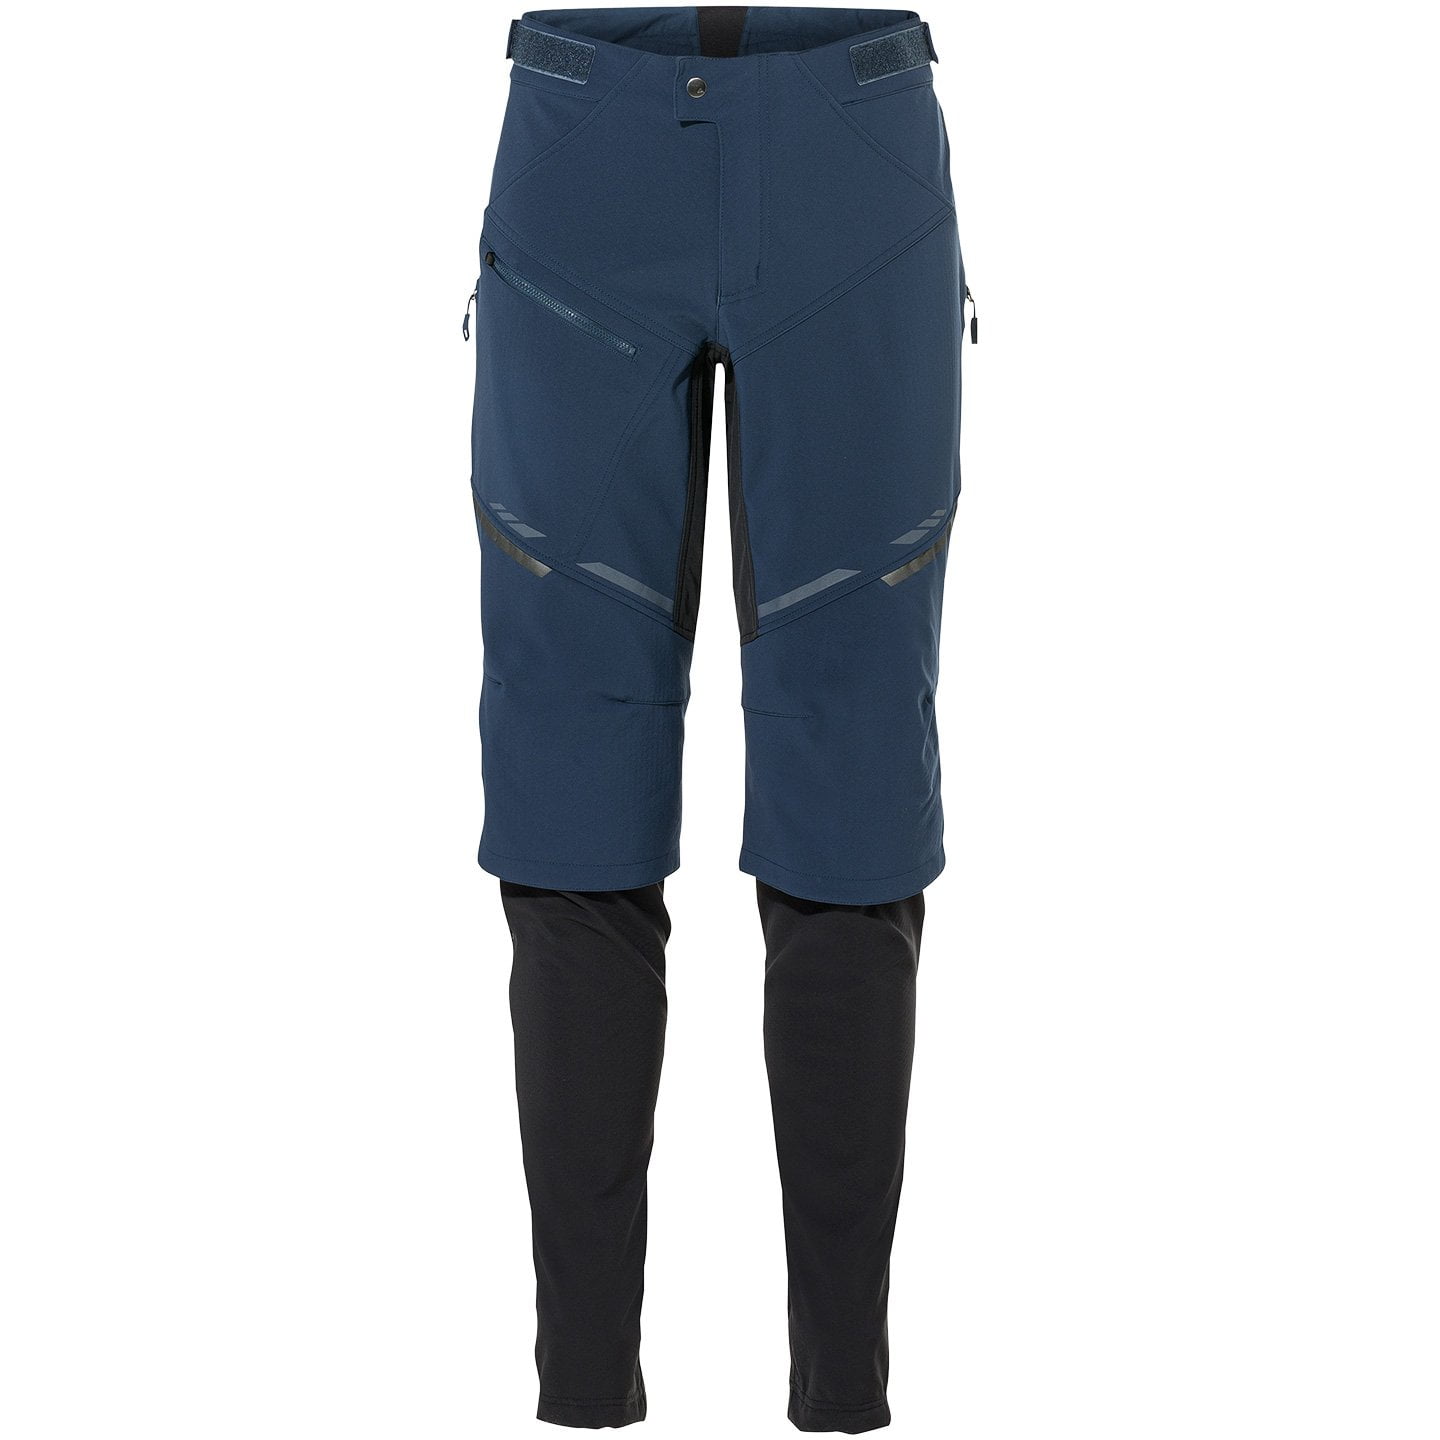 Virt II Long Bike Trousers w/o Pad Long Bike Pants, for men, size XL, Cycle shorts, Cycling clothing